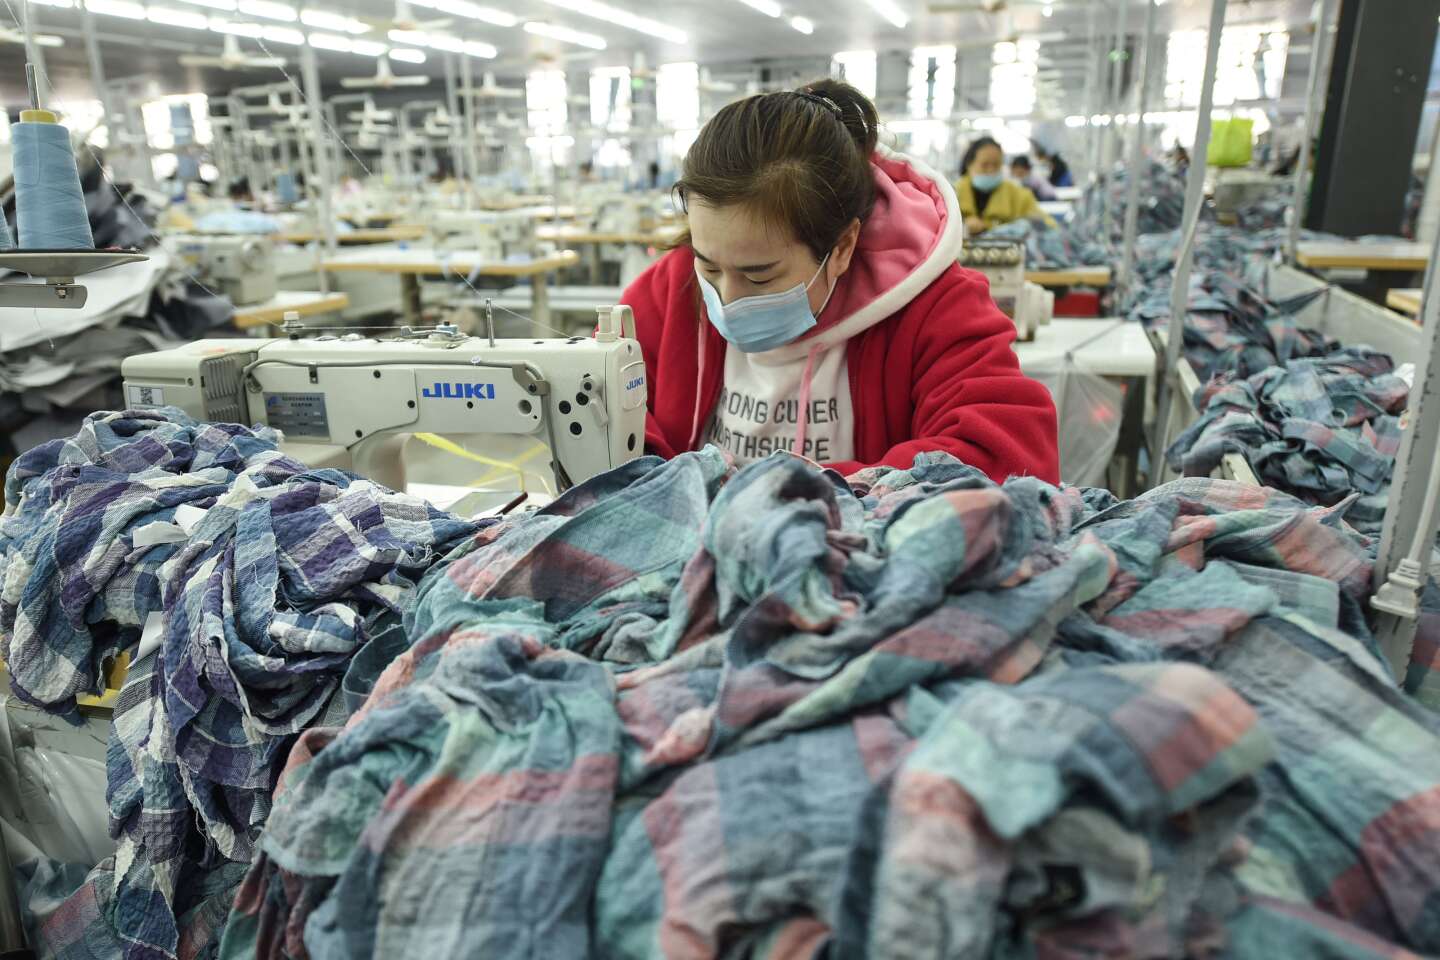 “Di fronte all’inquinamento dell’industria tessile, dobbiamo comprare meno vestiti possibile”.